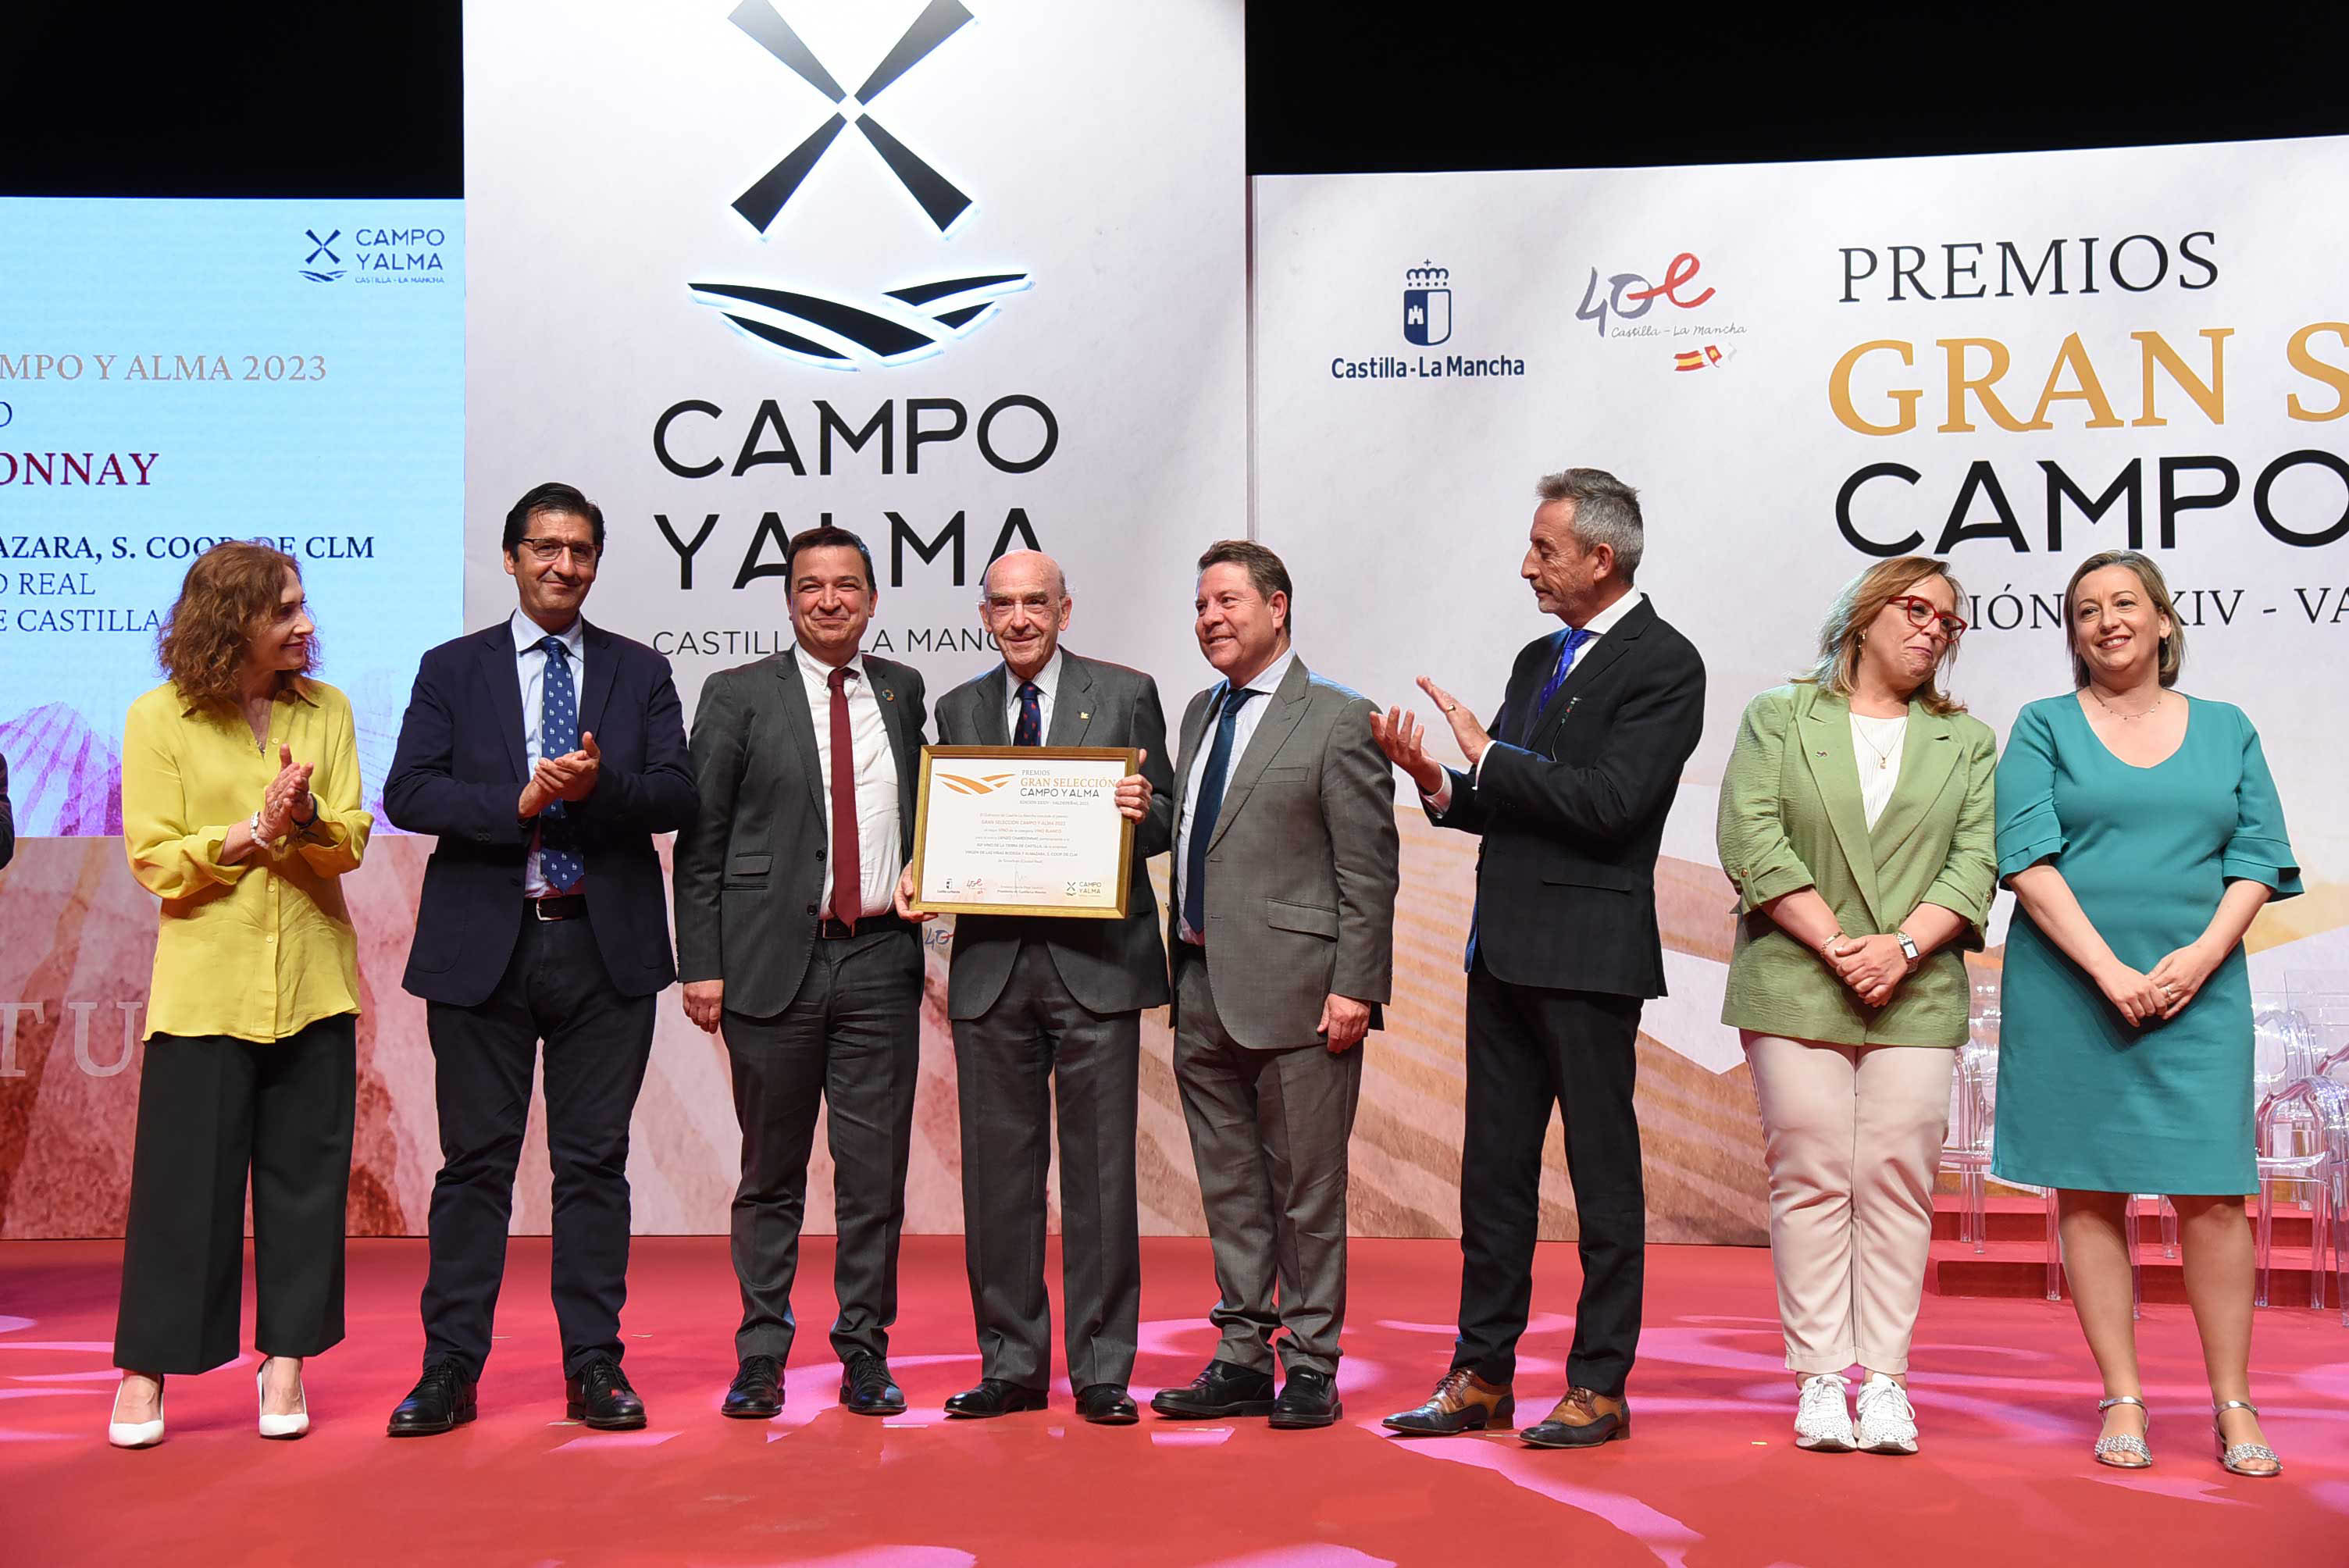 Rafael Torres recoge el premio Gran Selección Campo y Alma otorgado al vino "Lienzo Chardonnay" de la Cooperativa Virgen de las Viñas de Tomelloso